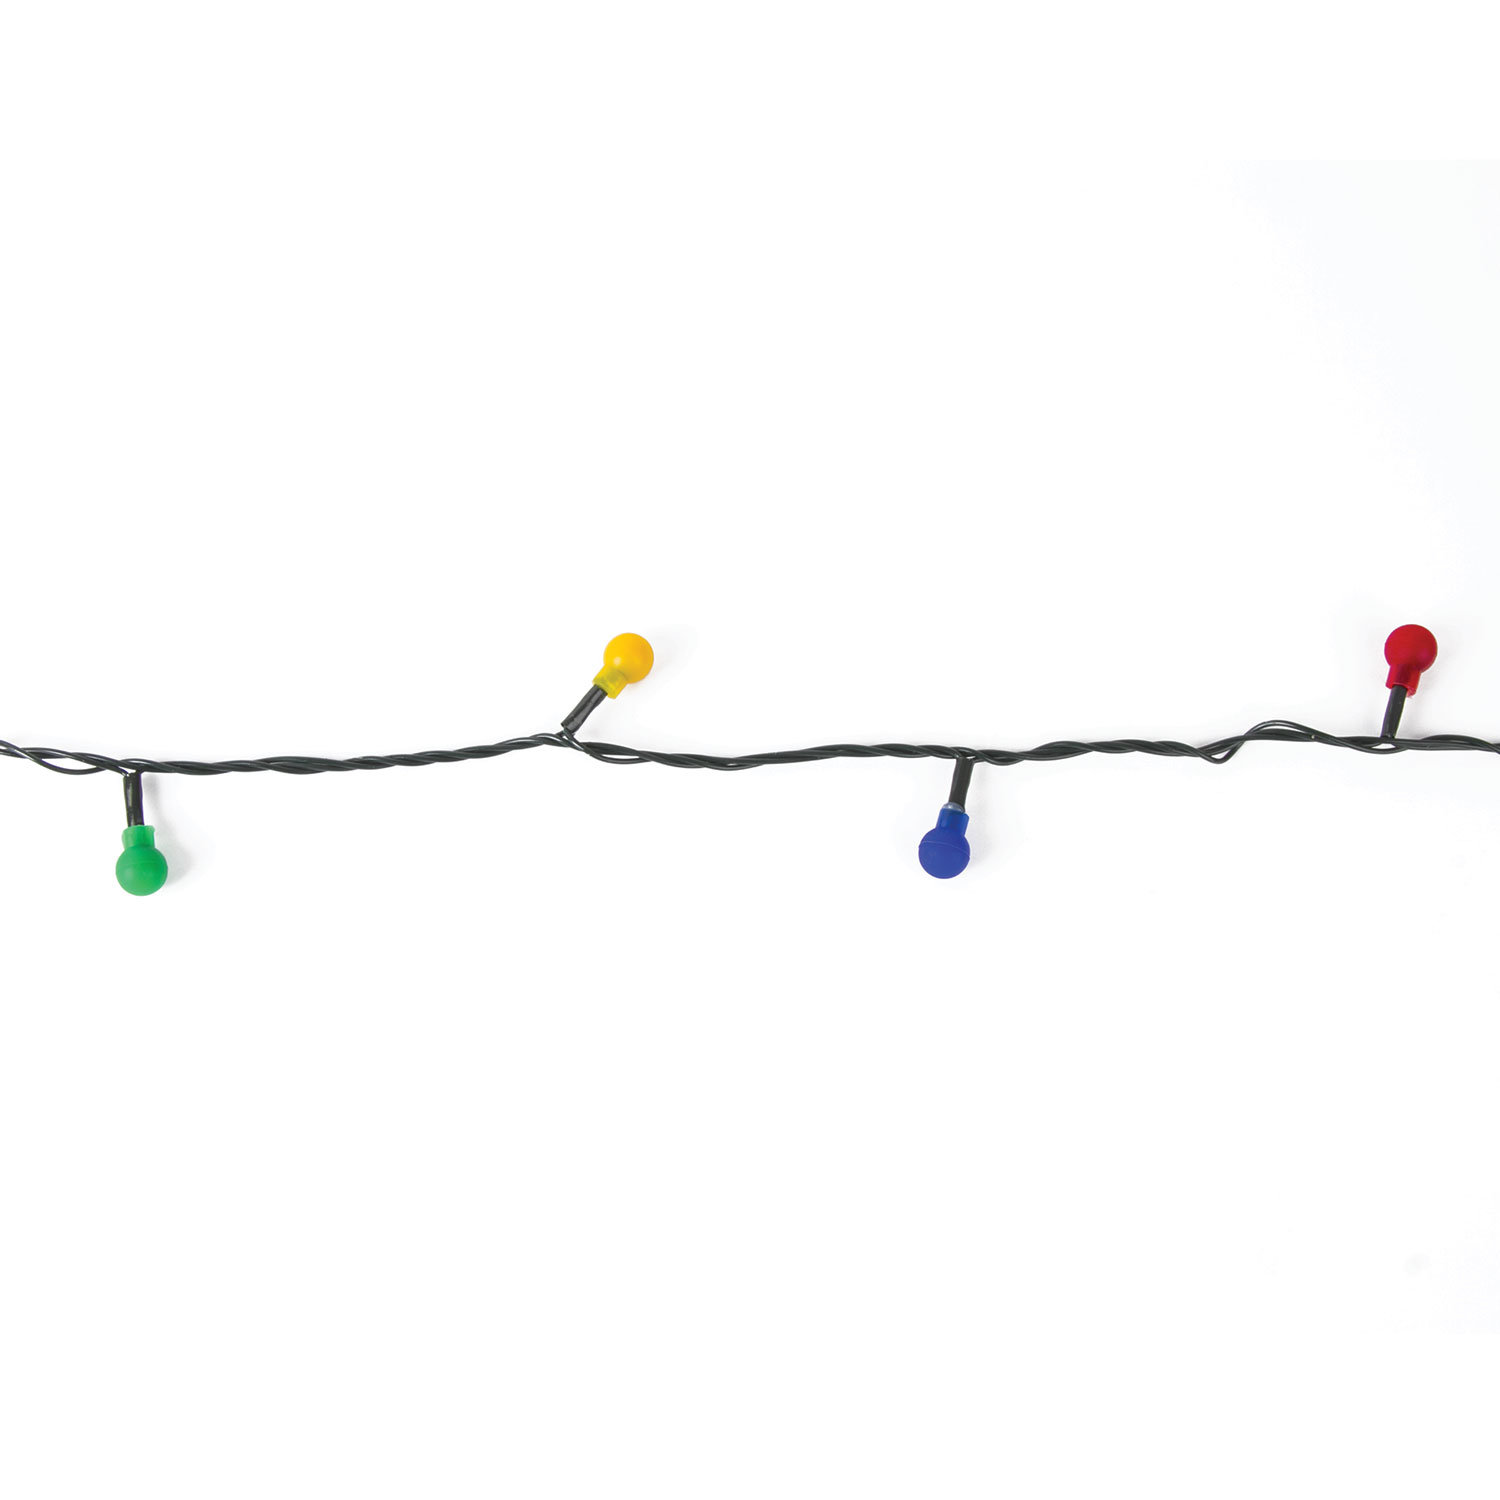 Электрогирлянда светодиодная ЗОЛОТАЯ СКАЗКА "Шарики", 50 ламп, 5 м, многоцветная, контроллер, 591103